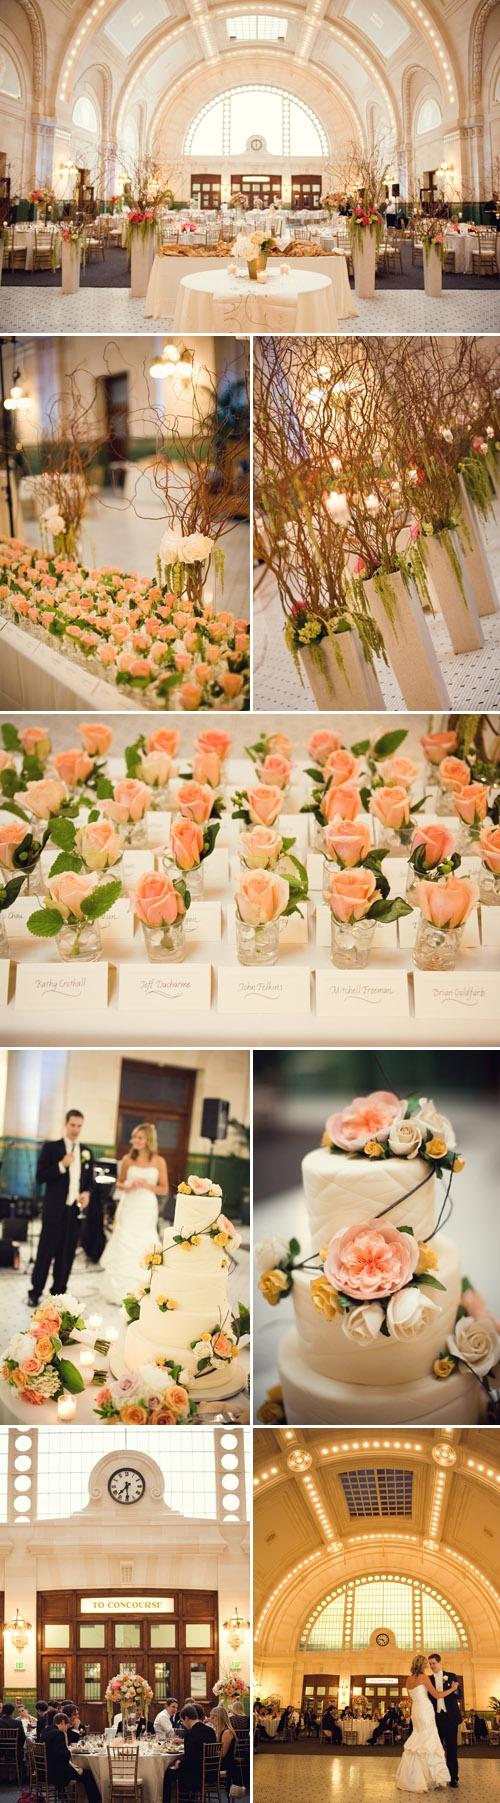 Mariage - Palettes de mariée de couleur Peach